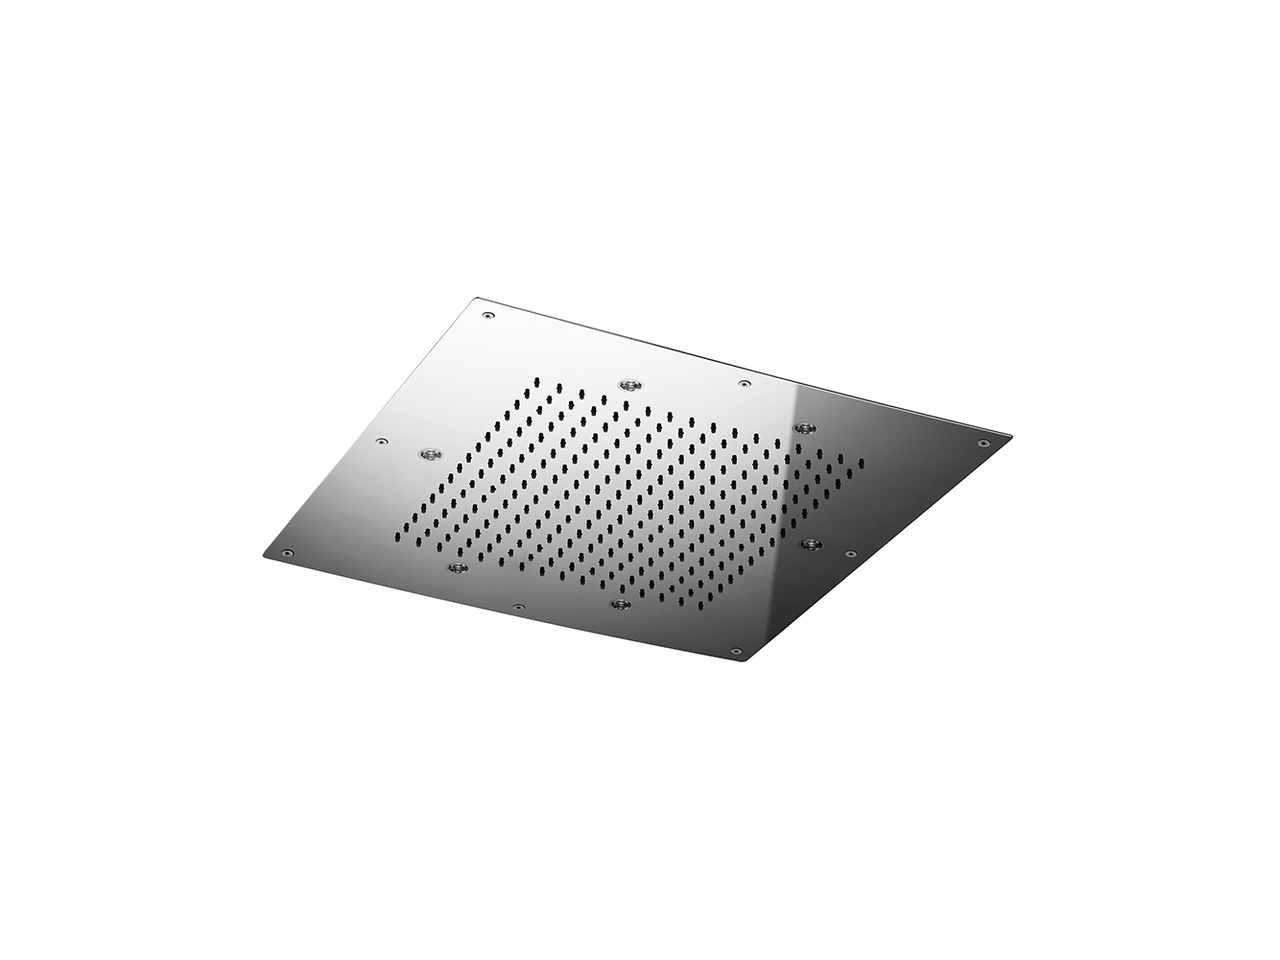 500x500mm stainless steel false ceiling showerhead ZEN - v1